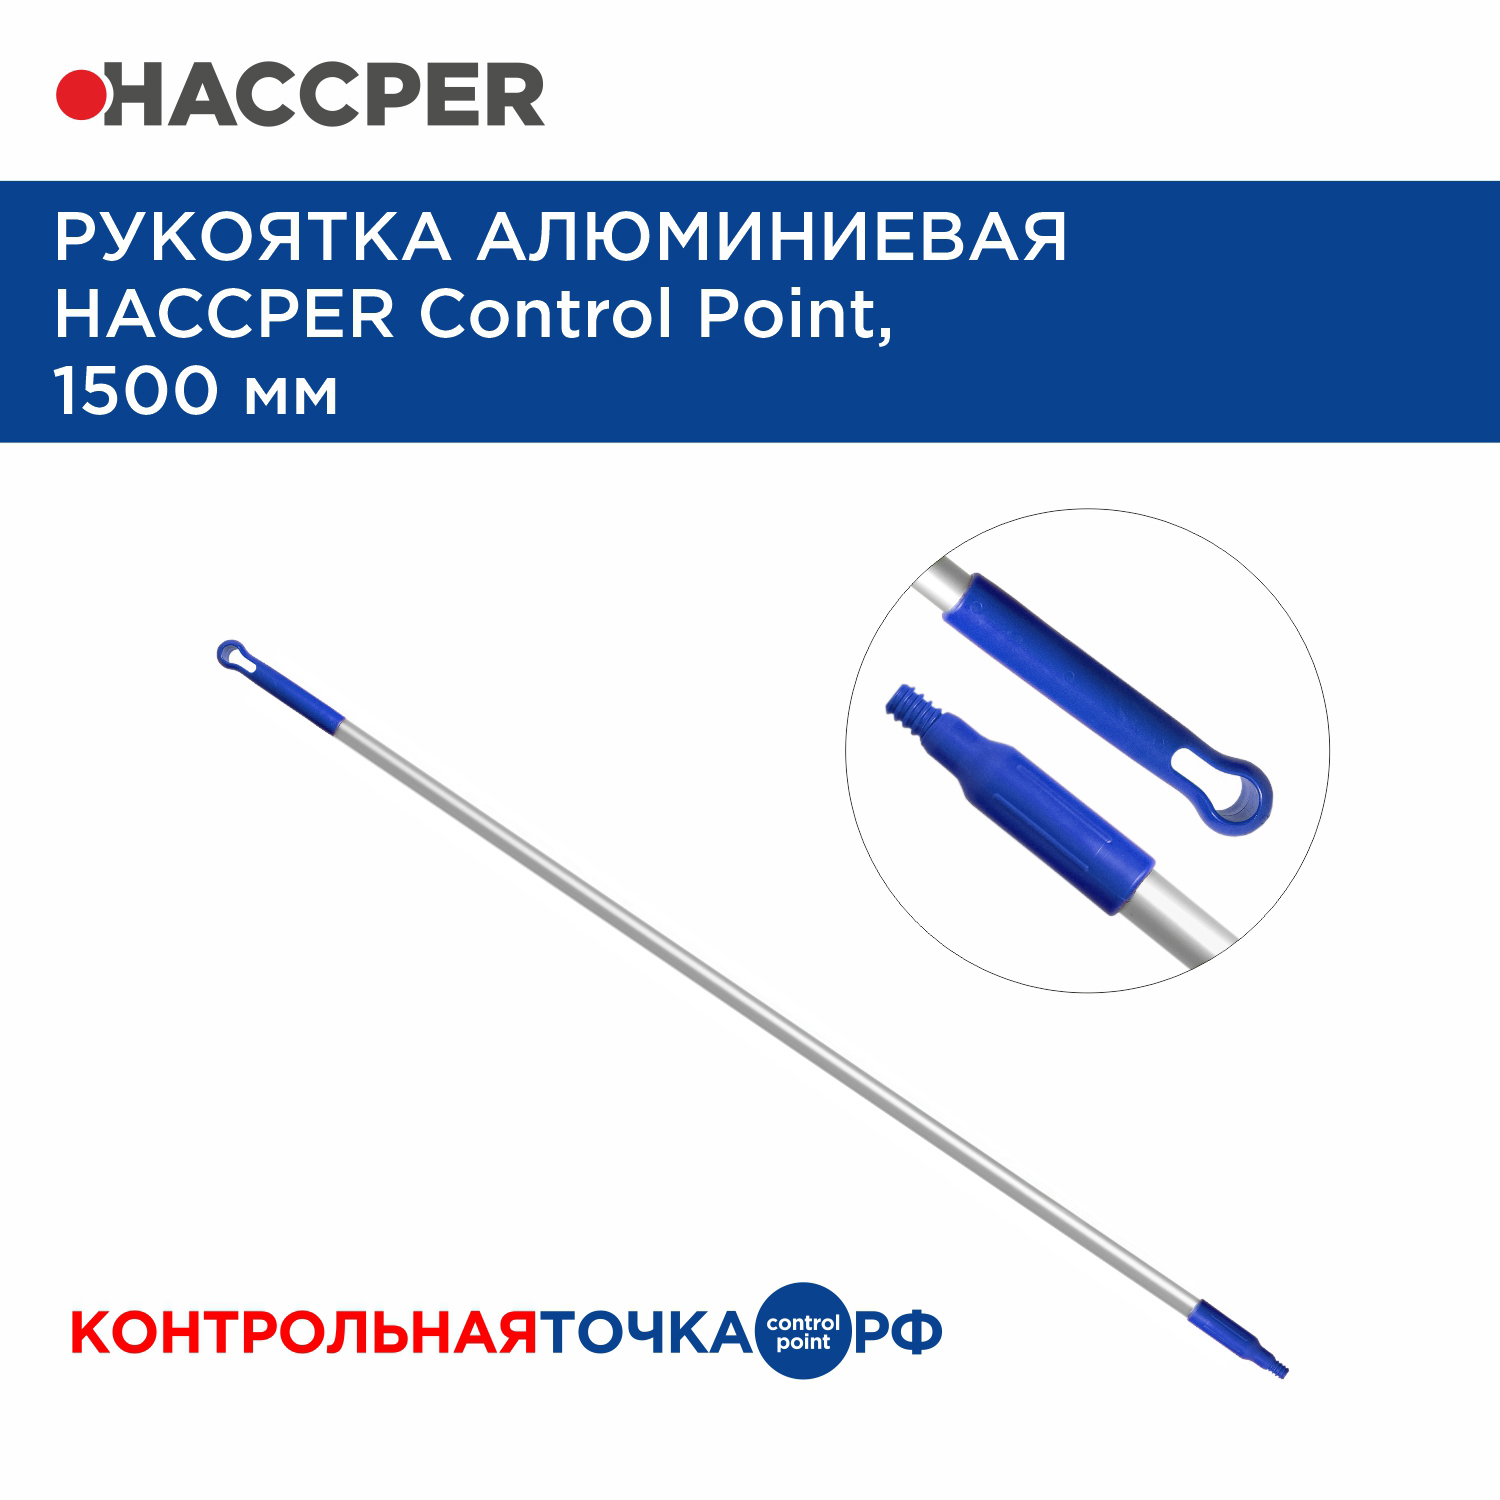 Рукоятка алюминиевая HACCPER Control Point,1500 мм, синяя